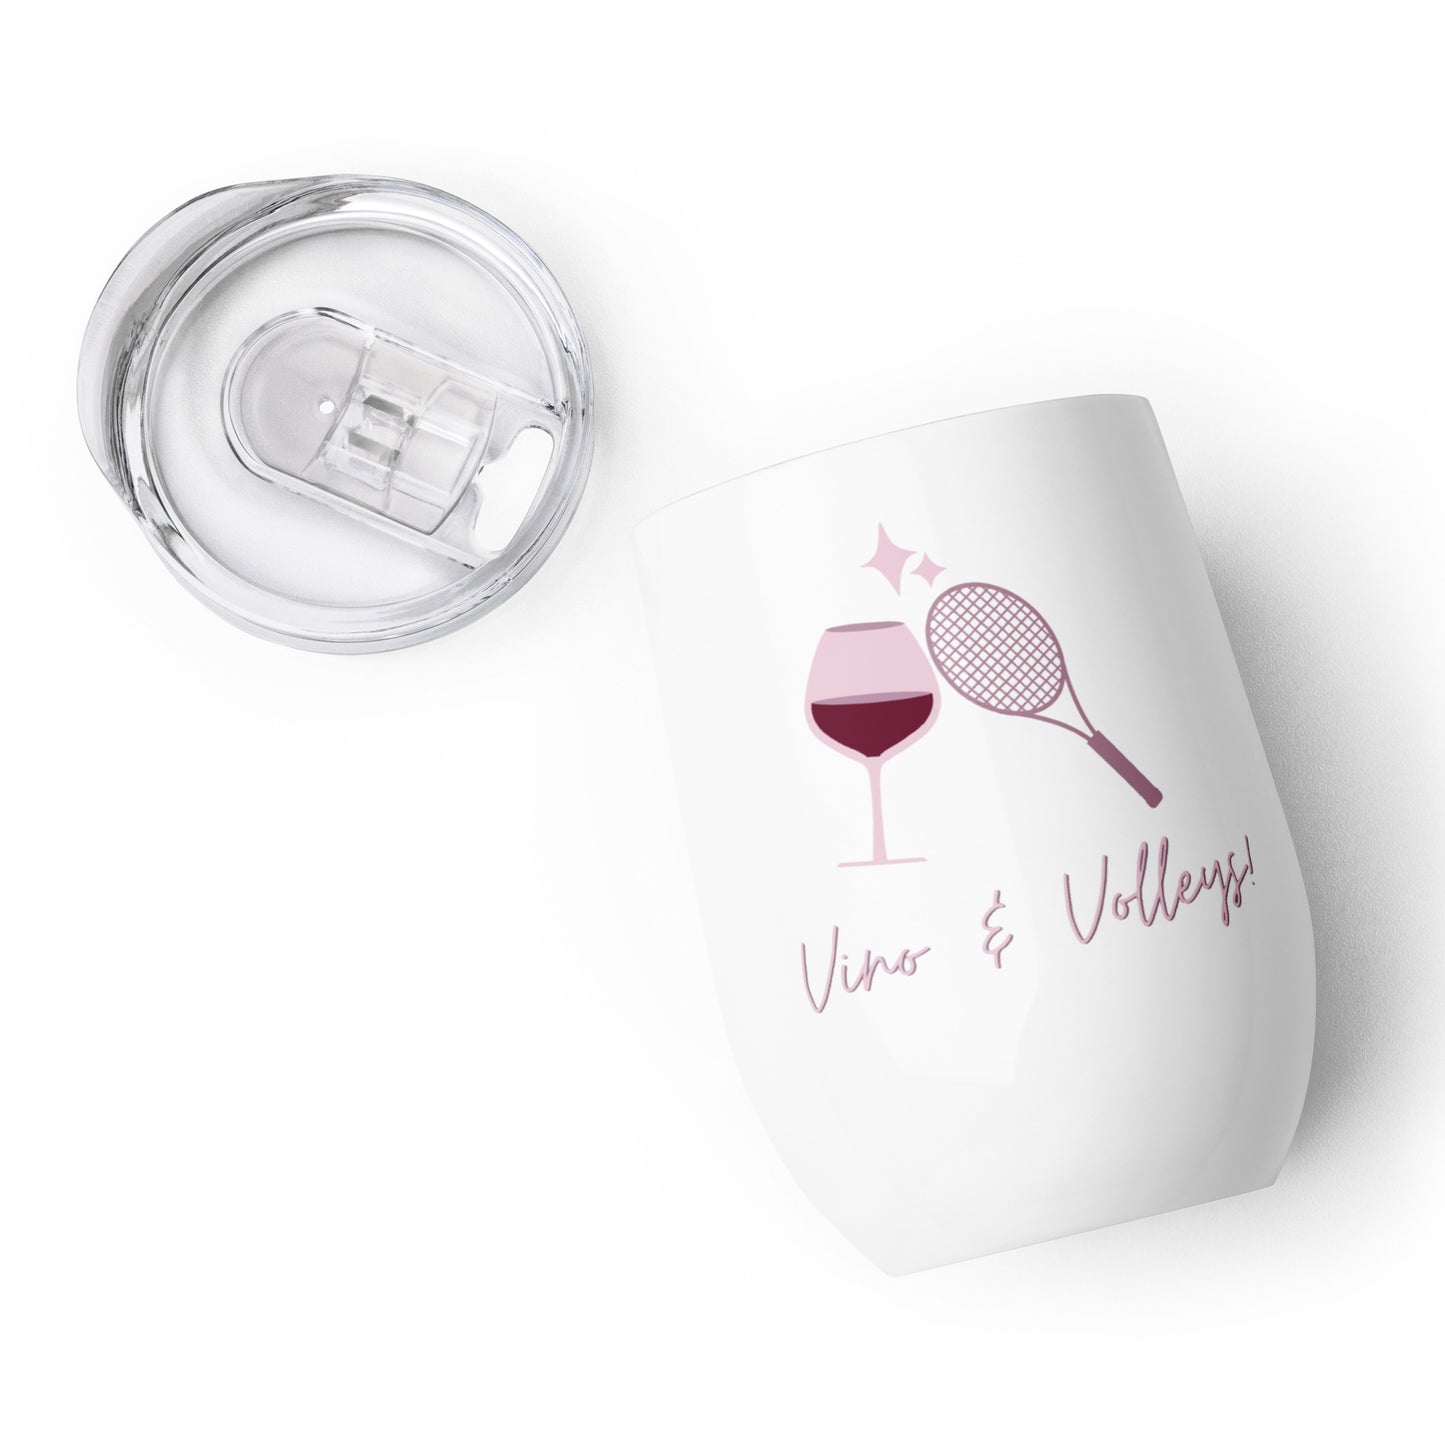 Vino & Volleys wine tumbler